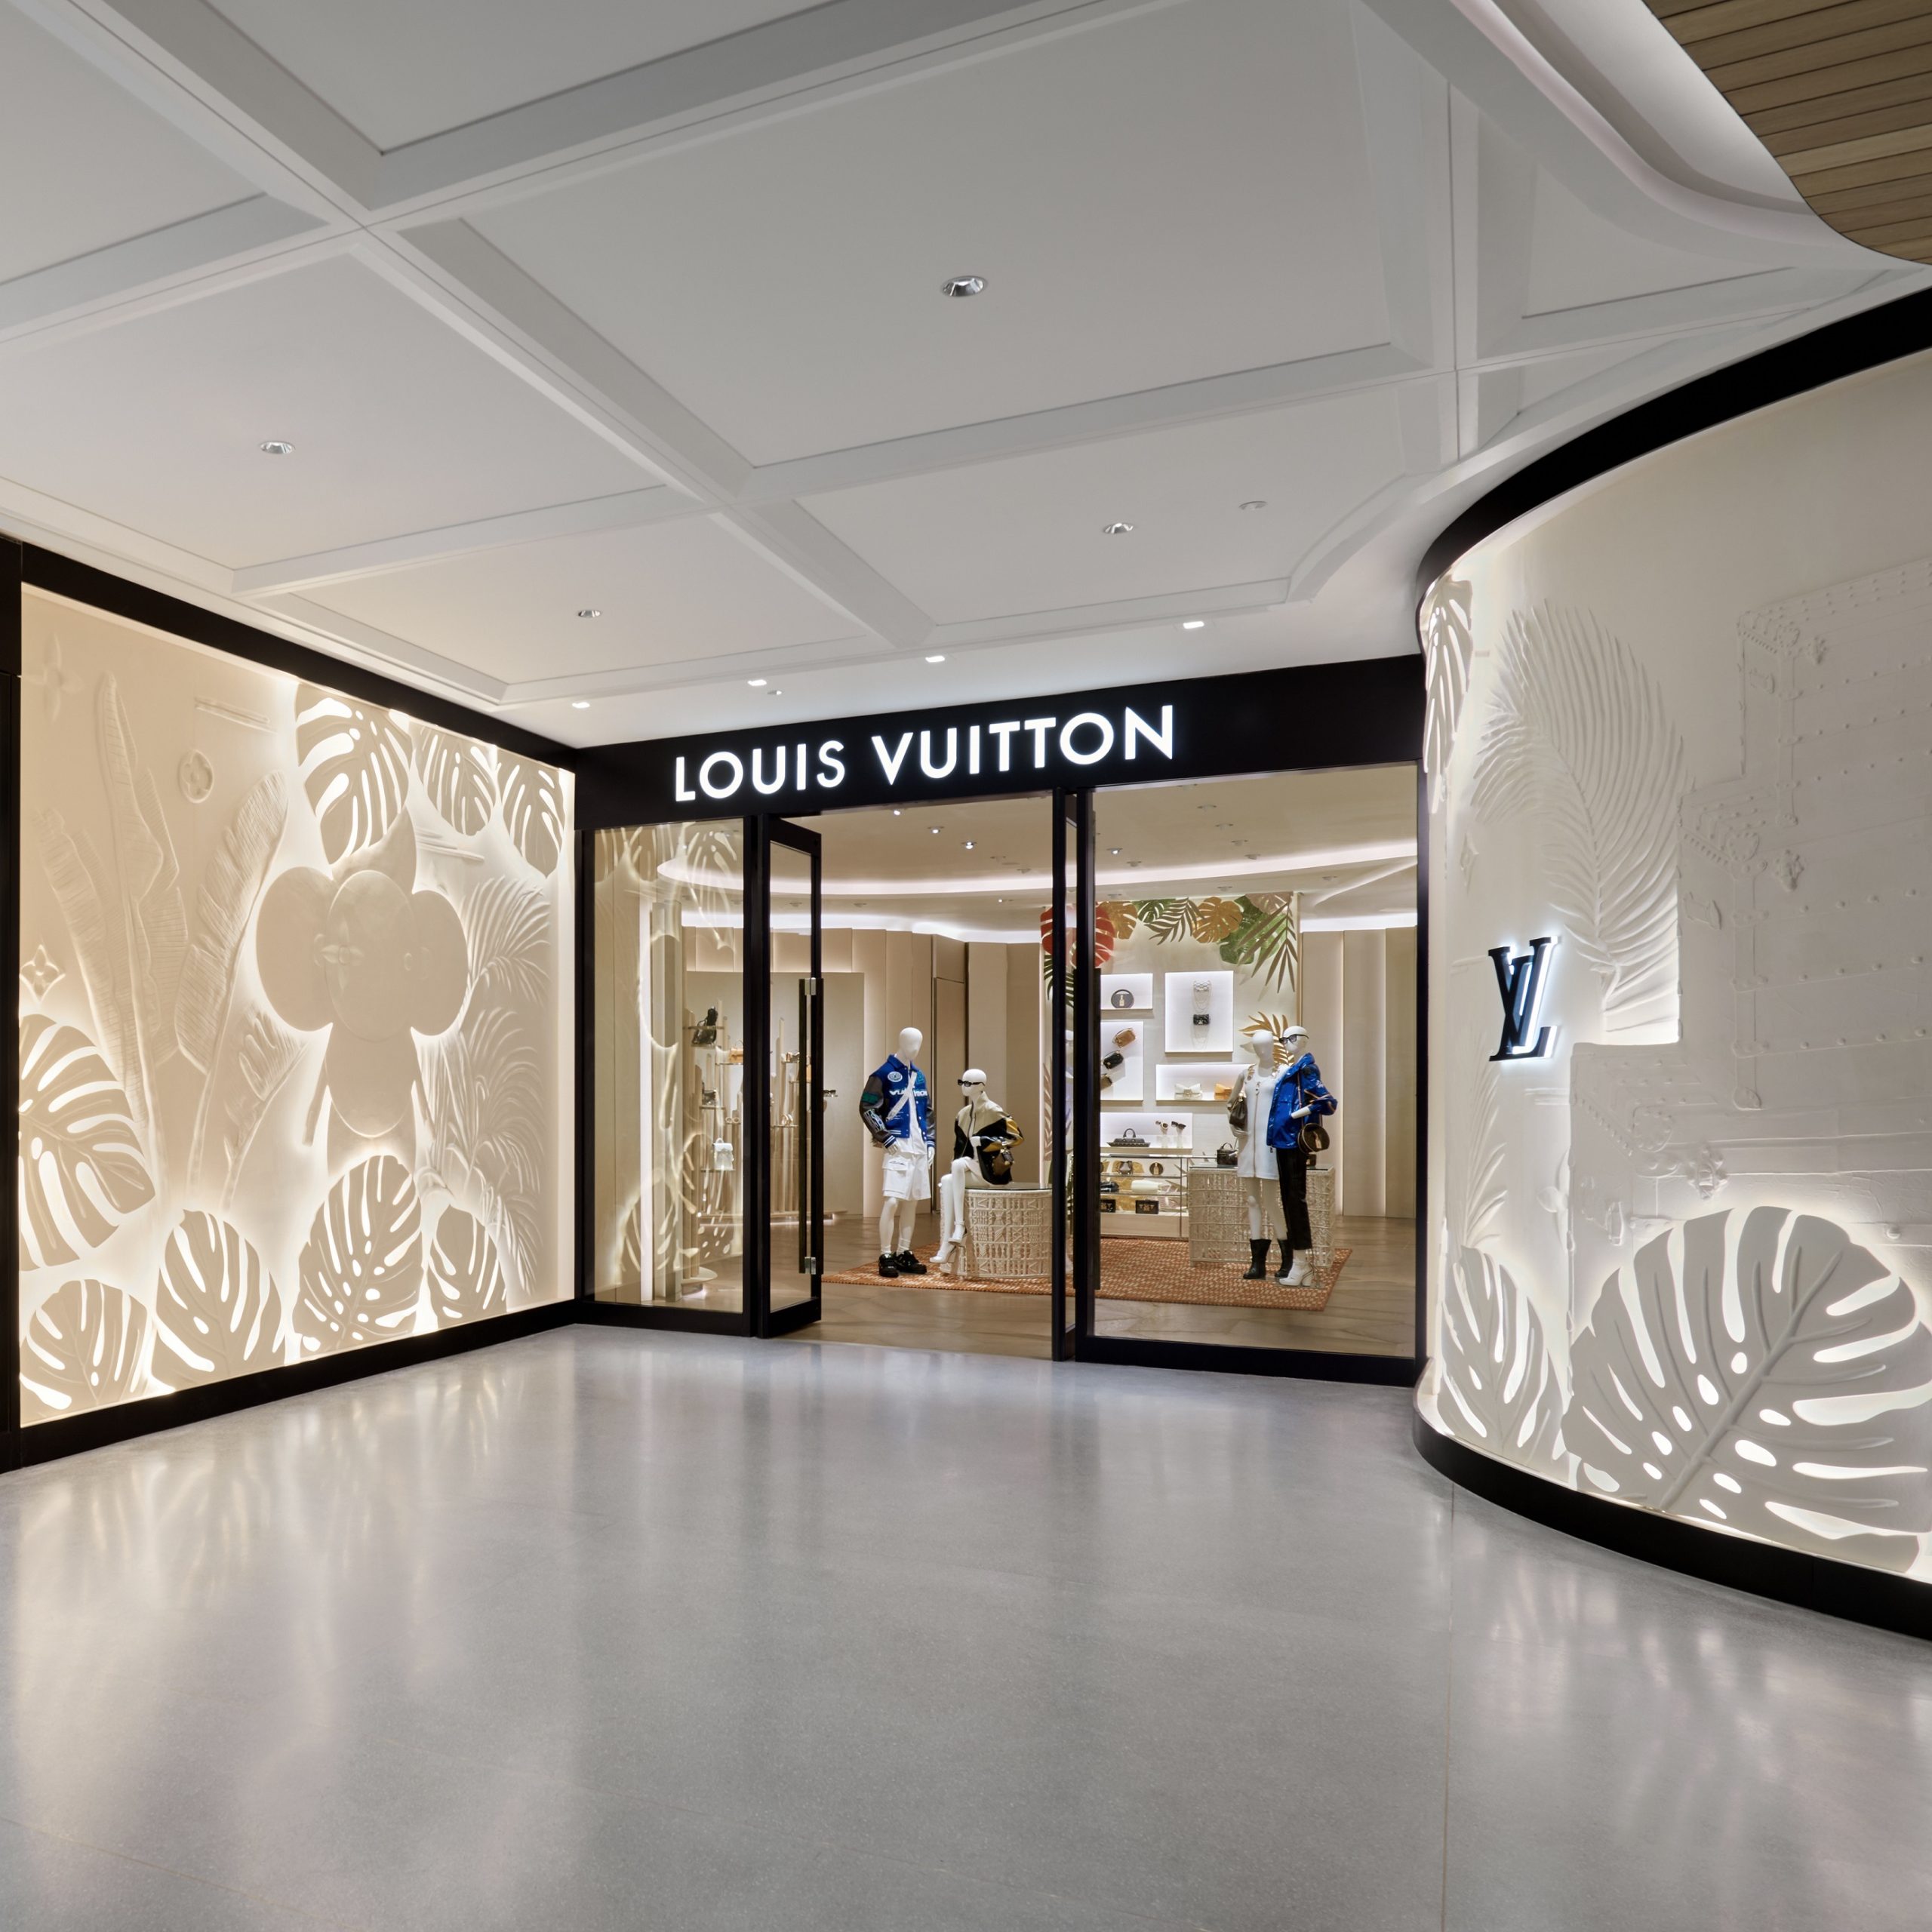 Mesébe illő csodavilág a Louis Vuitton új üzlete